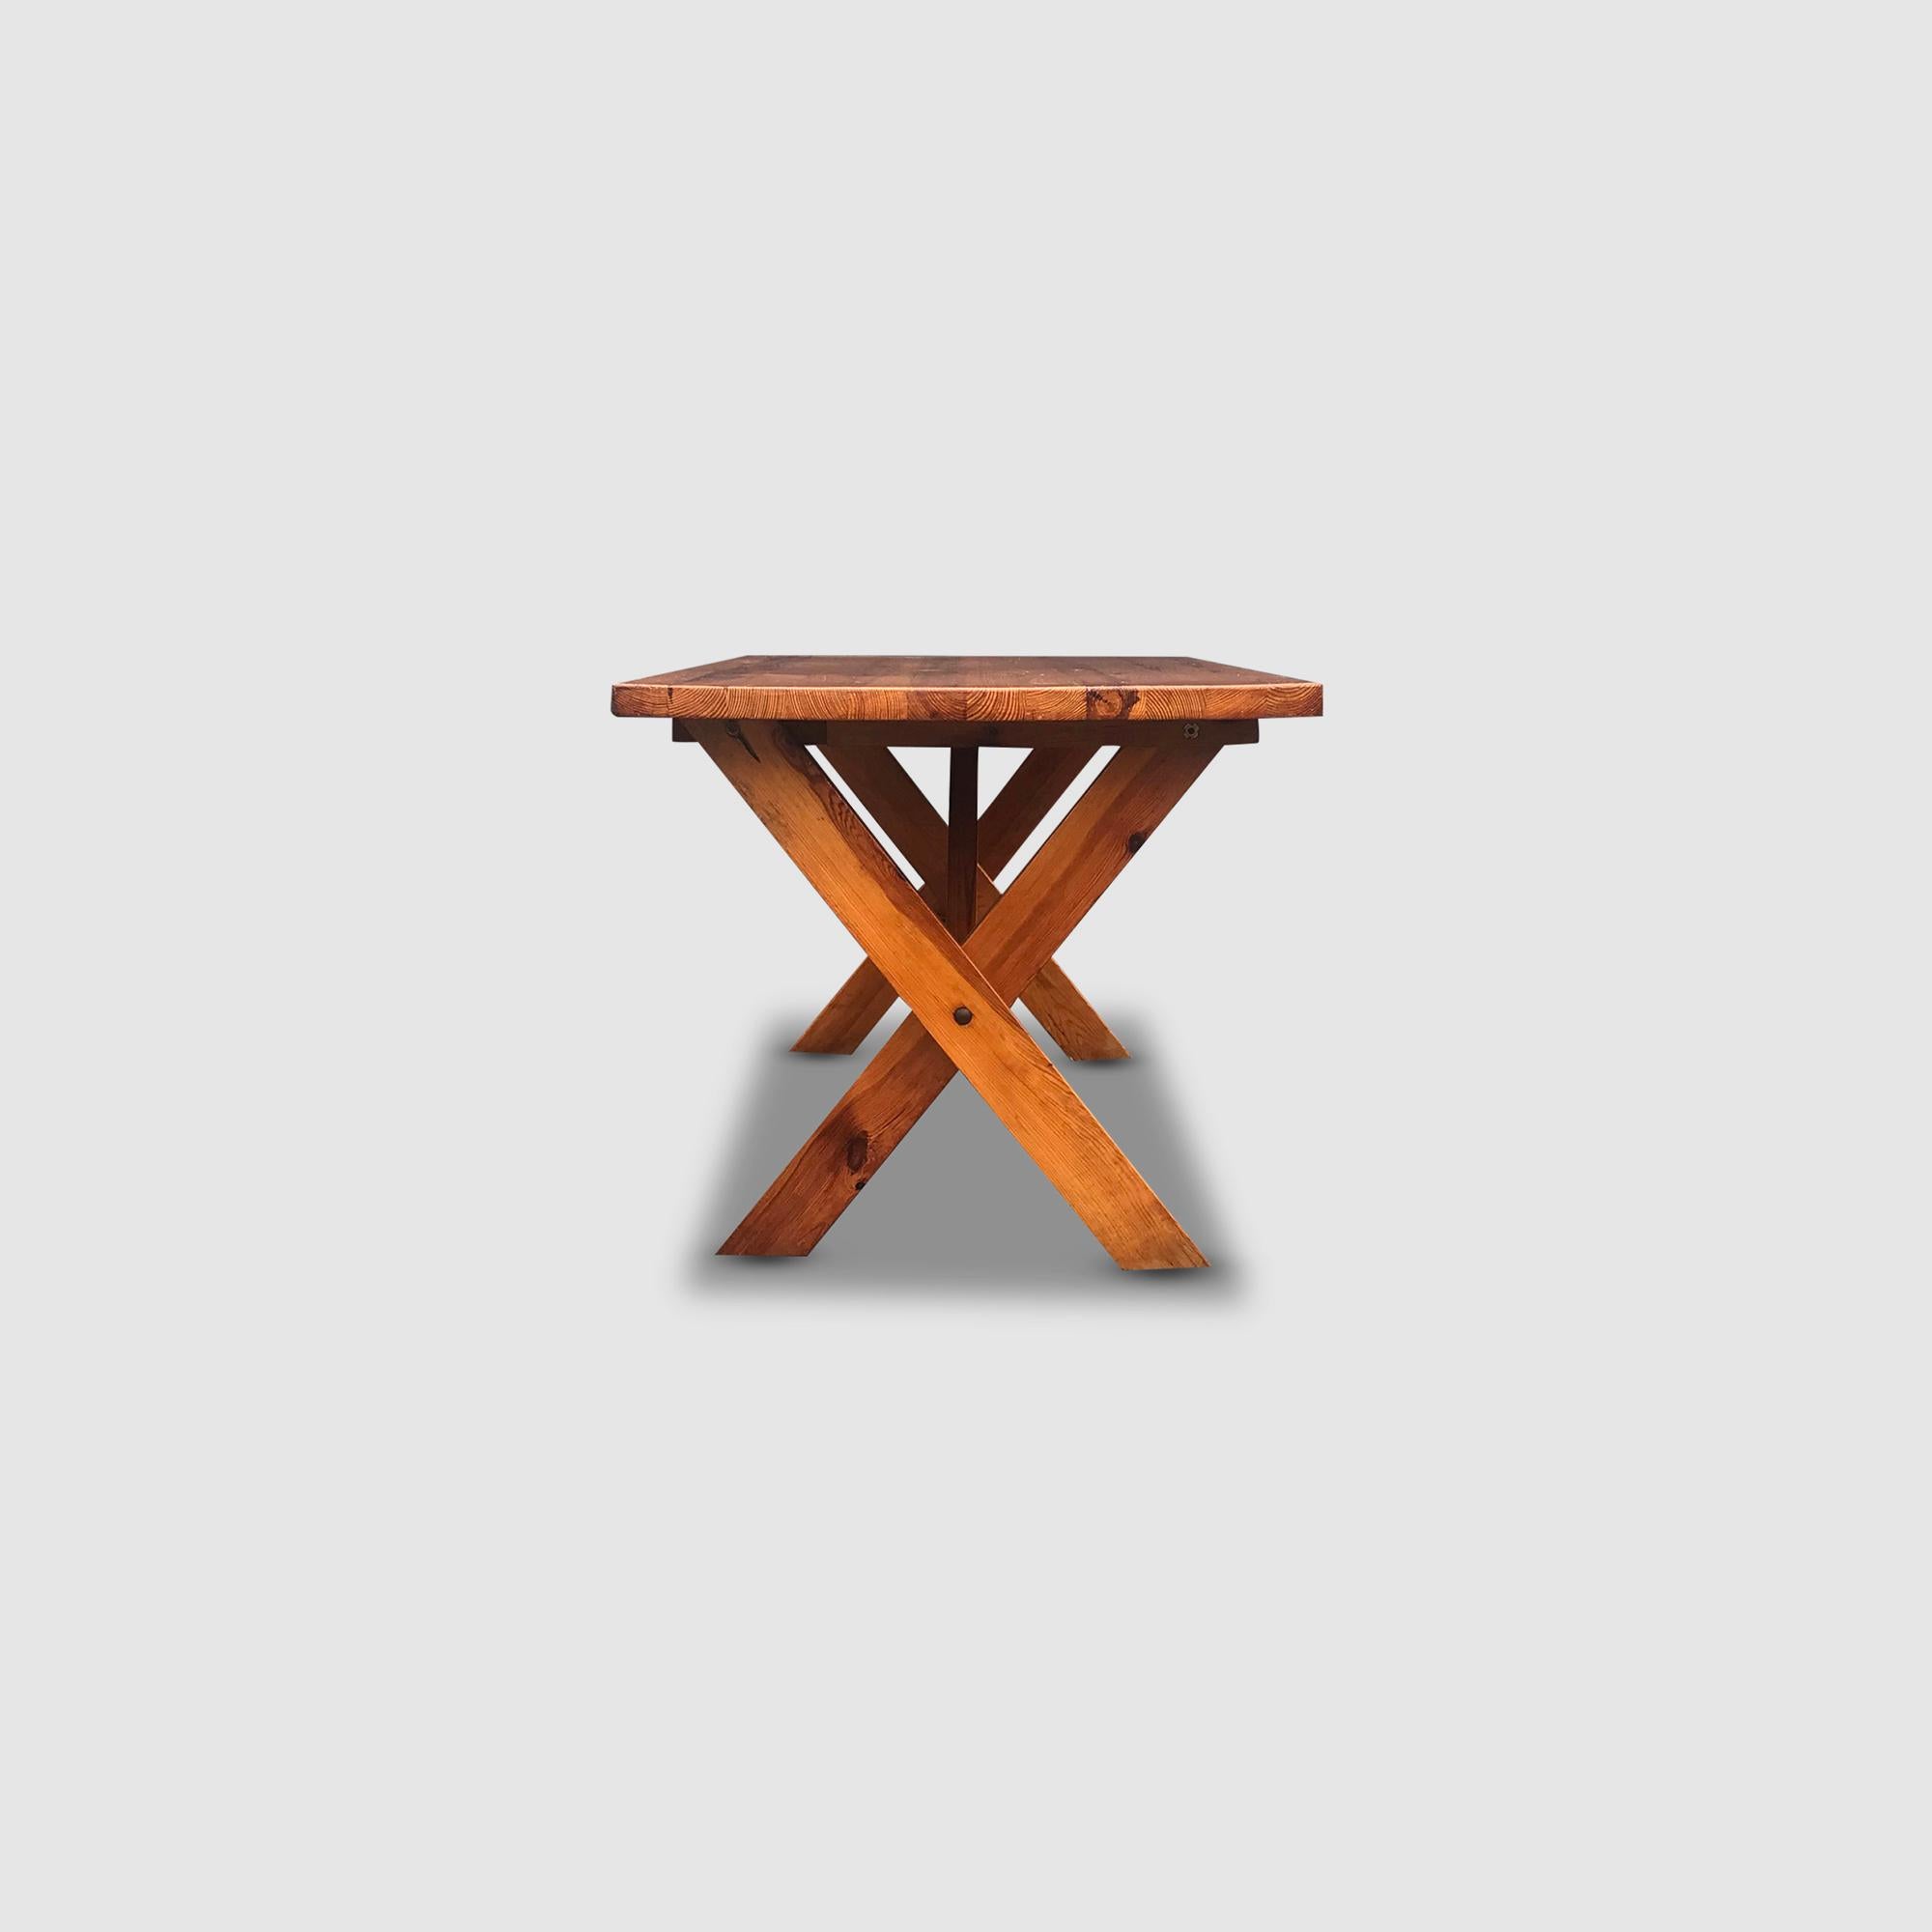 Modernist X-leg dining table by Ate van Apeldoorn for Houtwerk Hattem 1970s For Sale 5